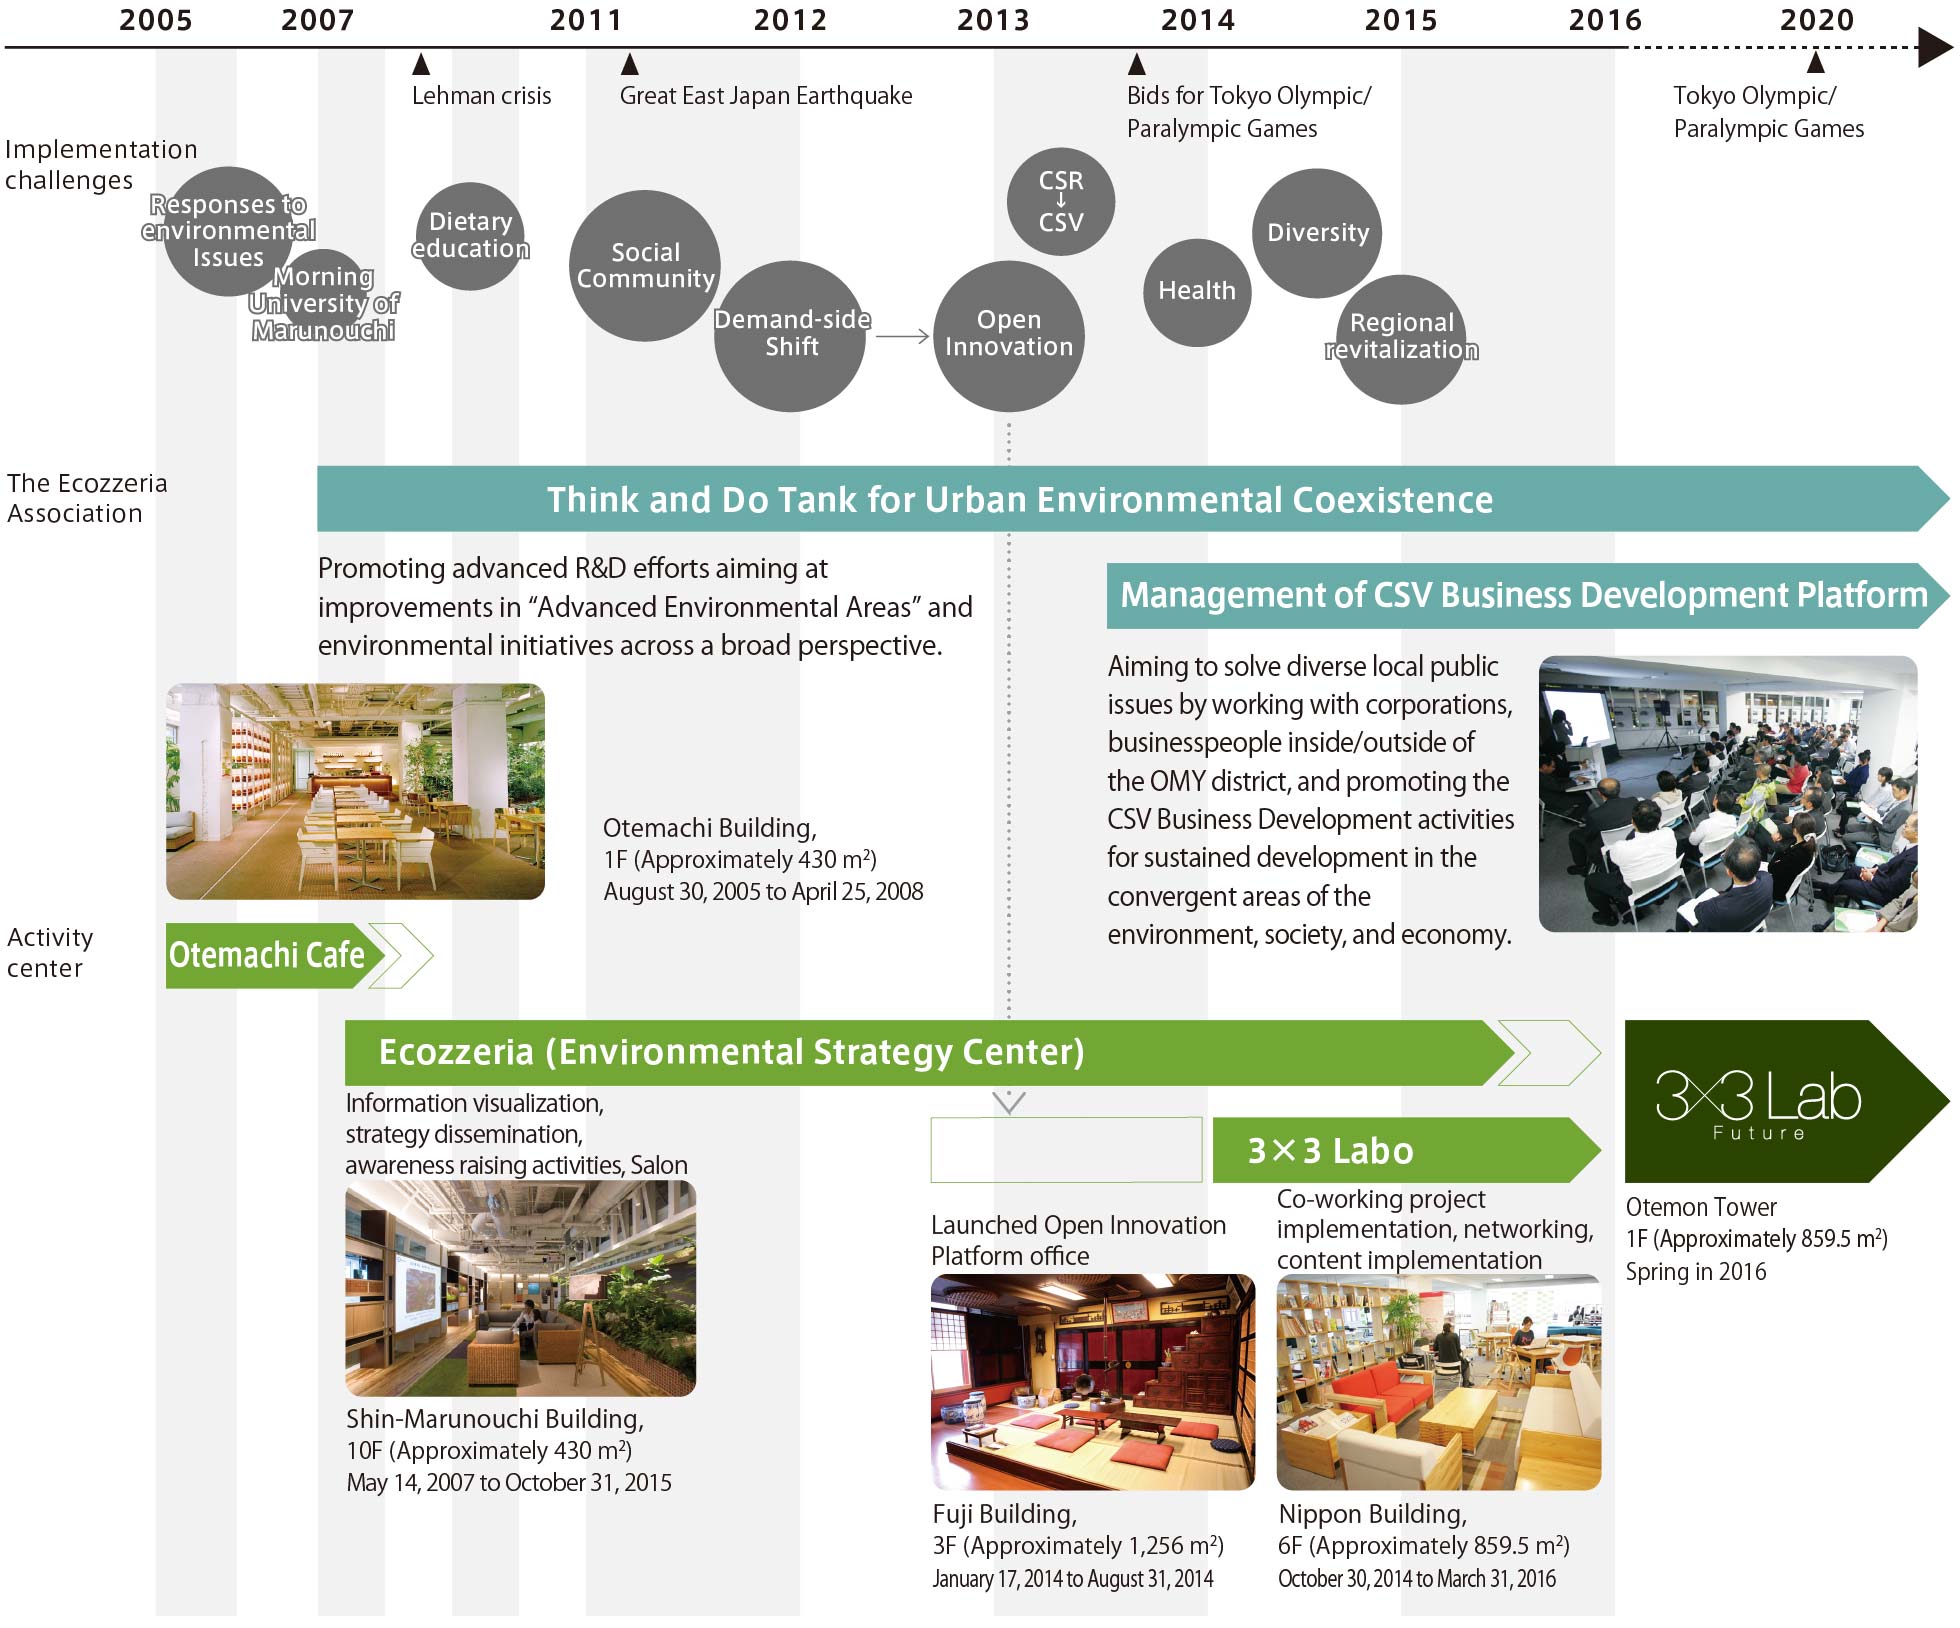 History of the Ecozzeria Association